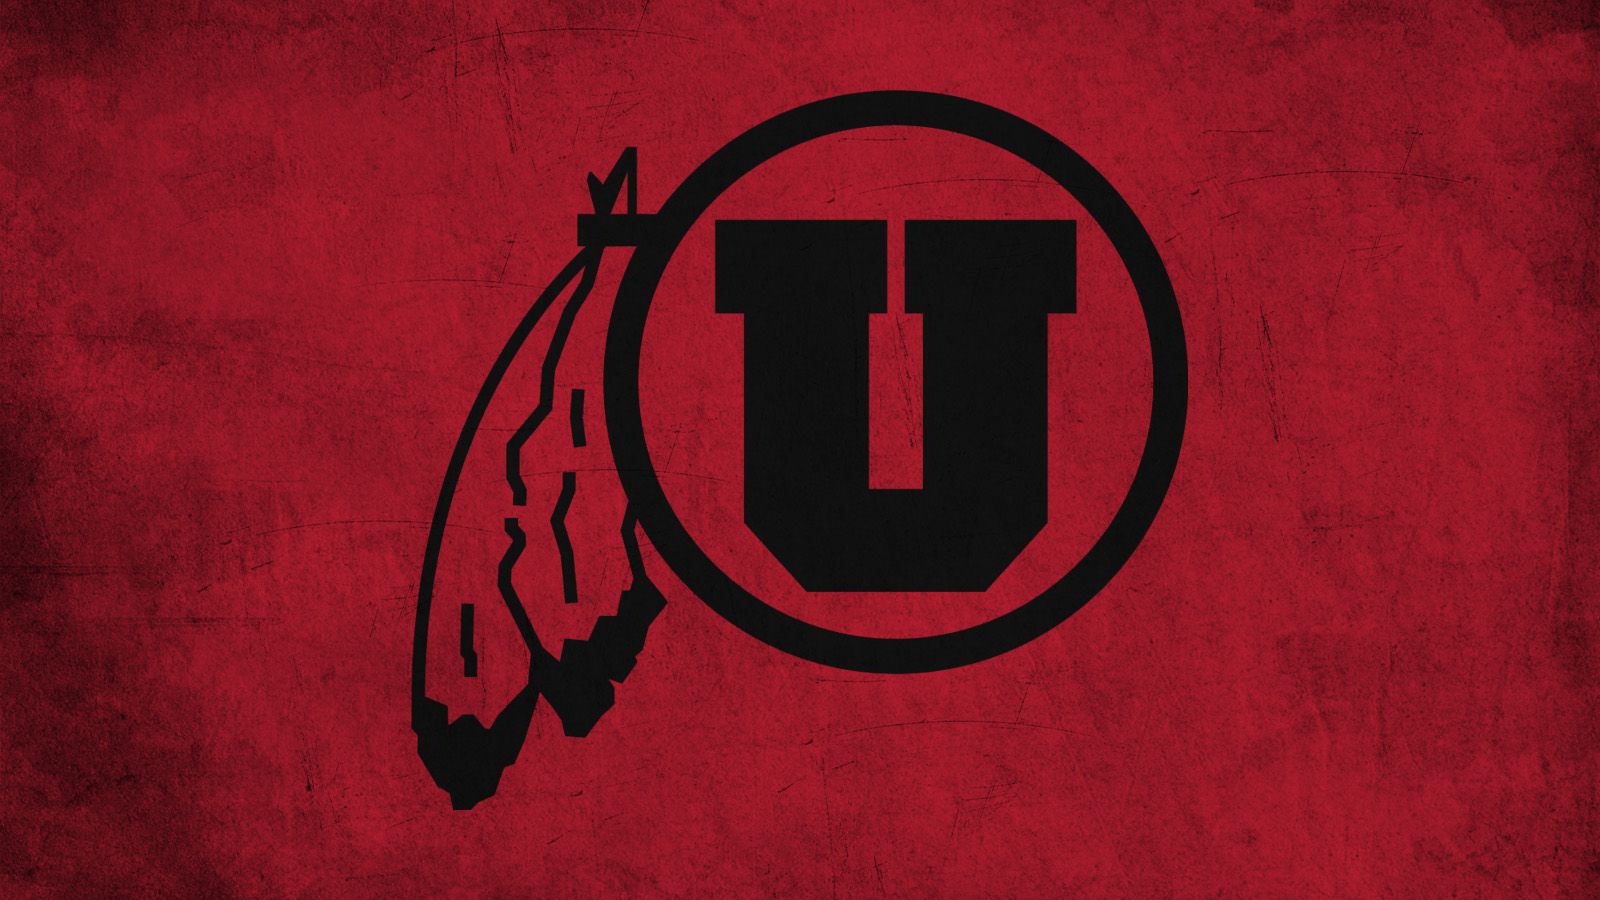 UTAH UTES college football wallpaper  5333x3333  597684  Utah utes  football Utah football Football wallpaper